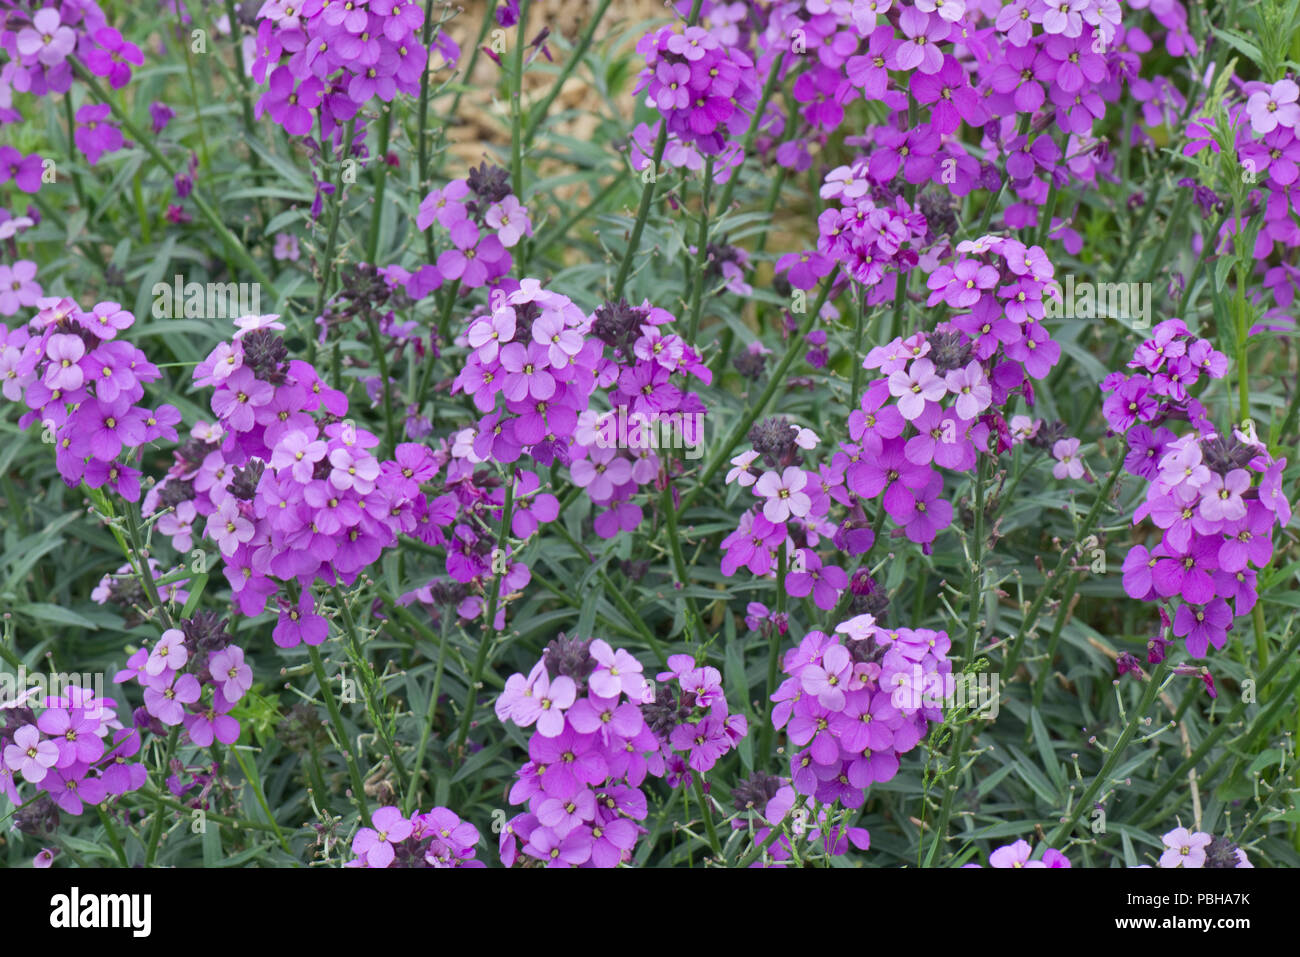 Erysimum "Bowles Malva dell', perenne violaciocca in pieno fiore viola, Berkshire può Foto Stock